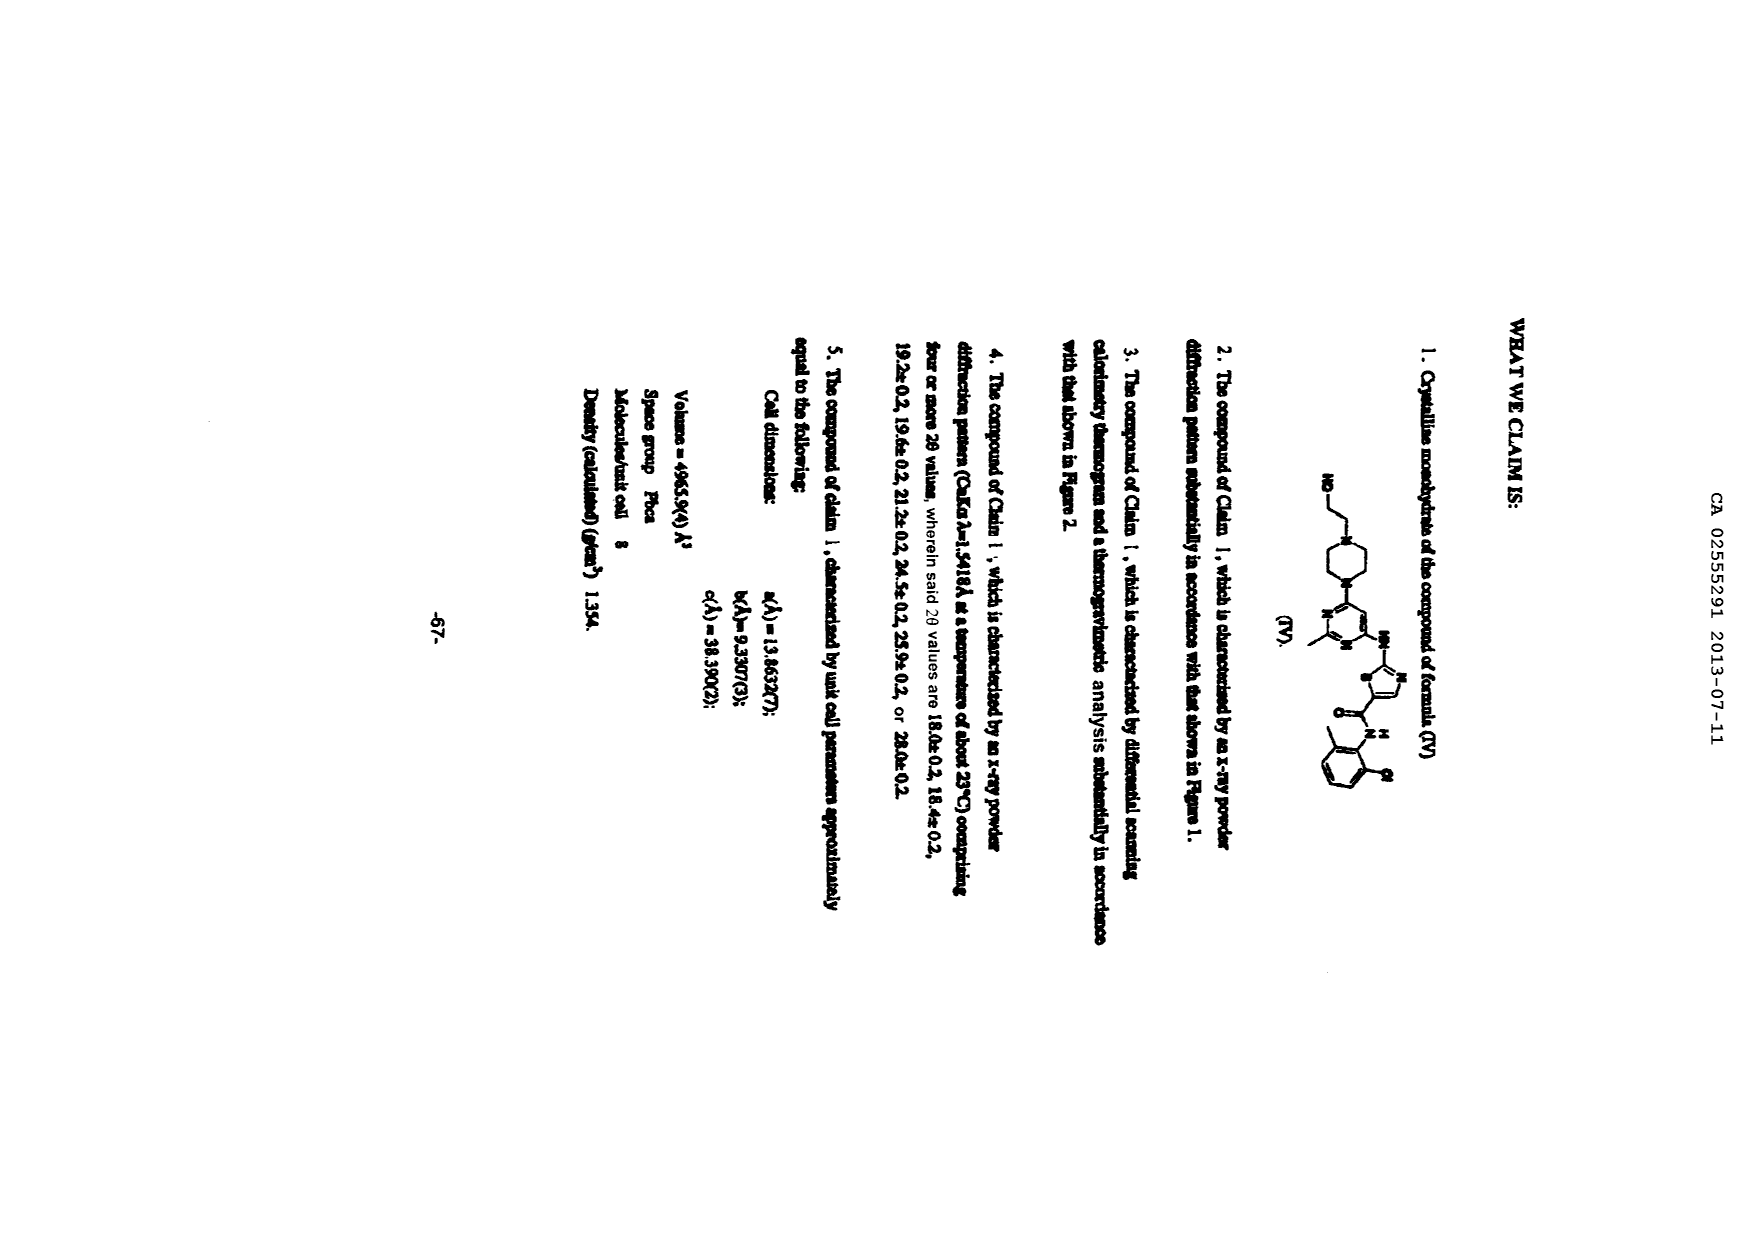 Document de brevet canadien 2555291. Revendications 20121211. Image 1 de 4